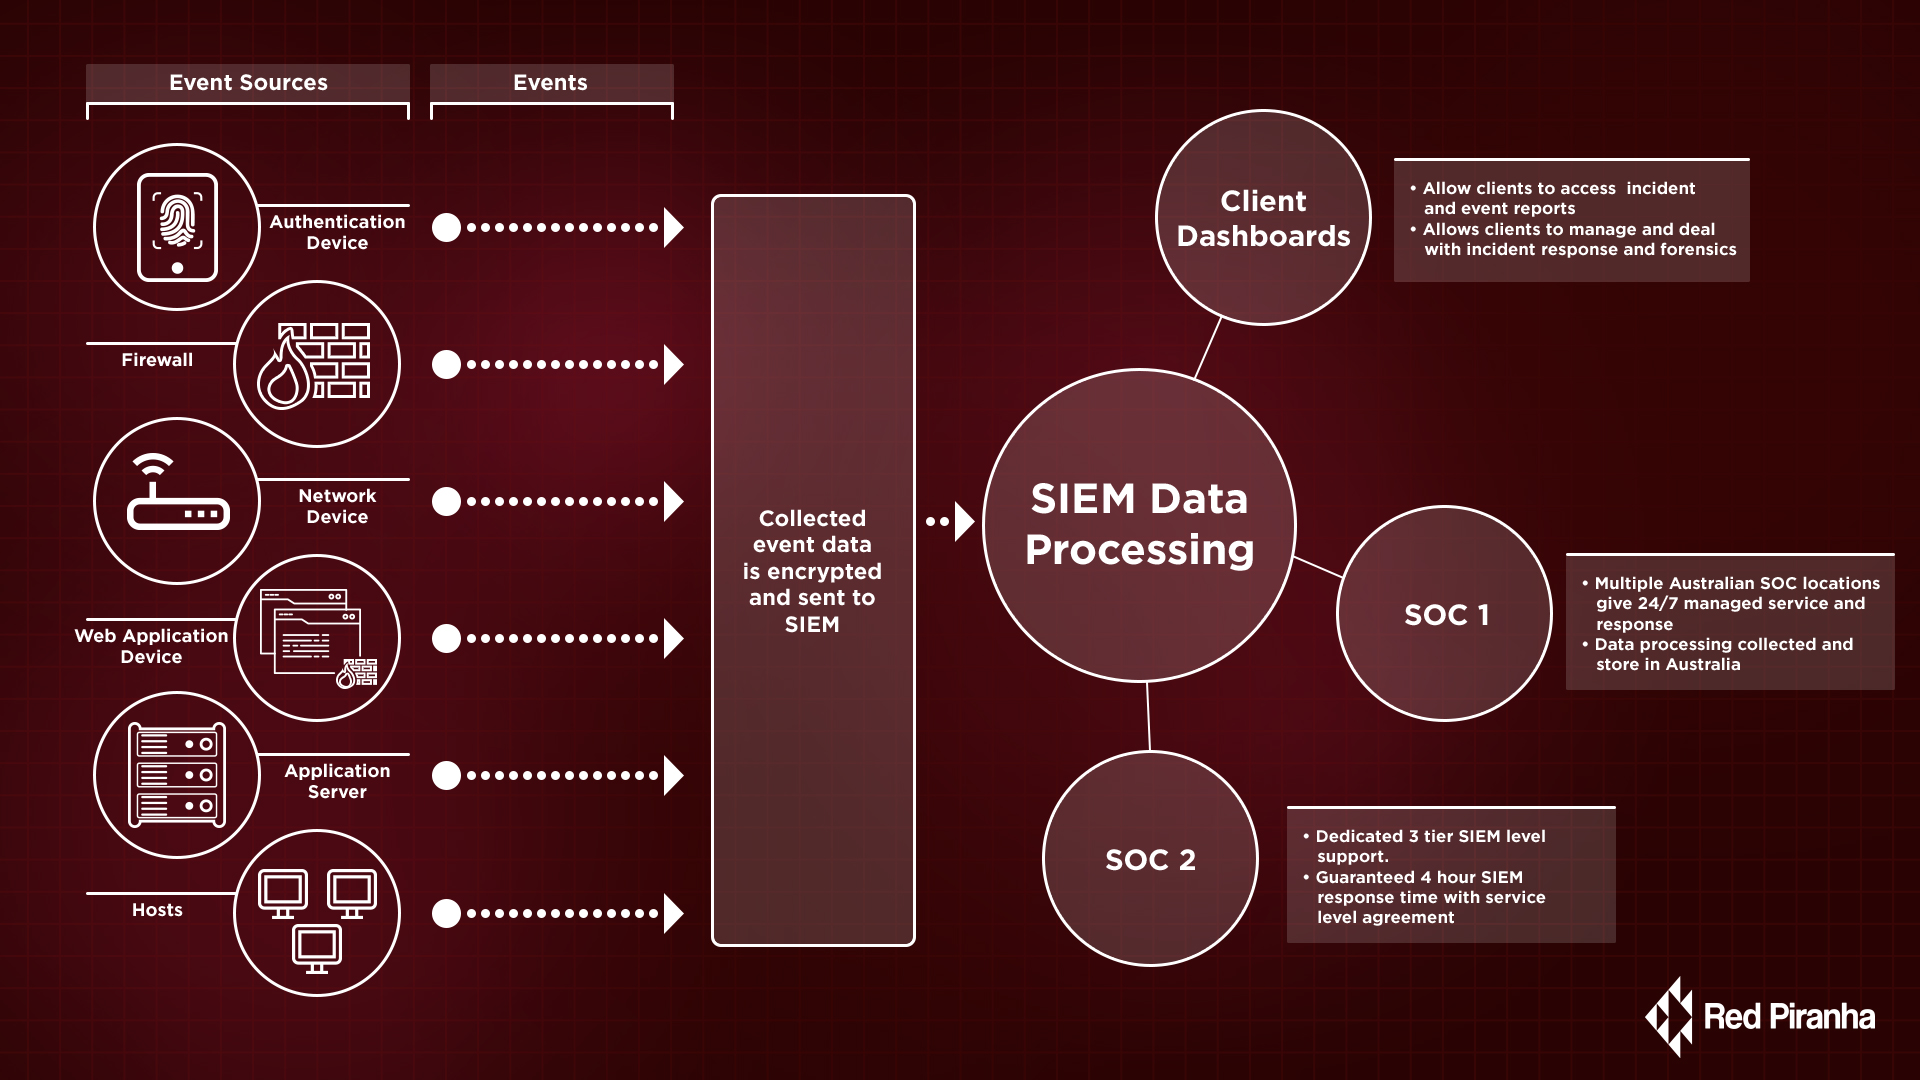 Red Piranha’s Next-gen Security Information Events Management (SIEM)